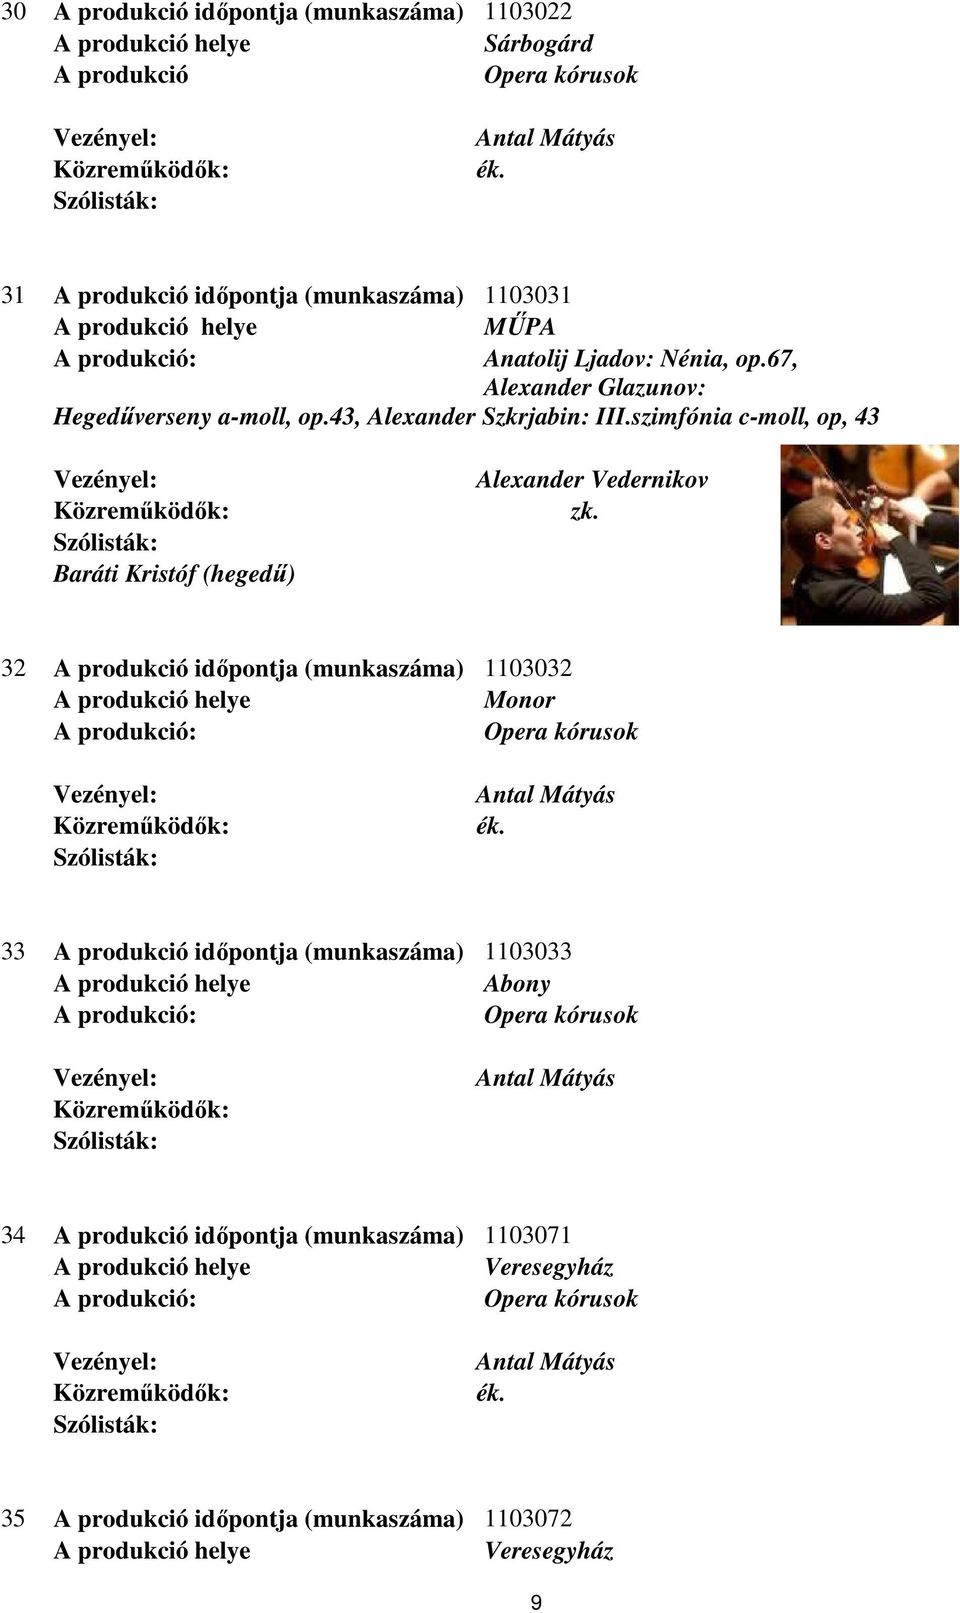 szimfónia c-moll, op, 43 Baráti Kristóf (hegedű) Alexander Vedernikov 32 A produkció időpontja (munkaszáma) 1103032 Monor 33 A